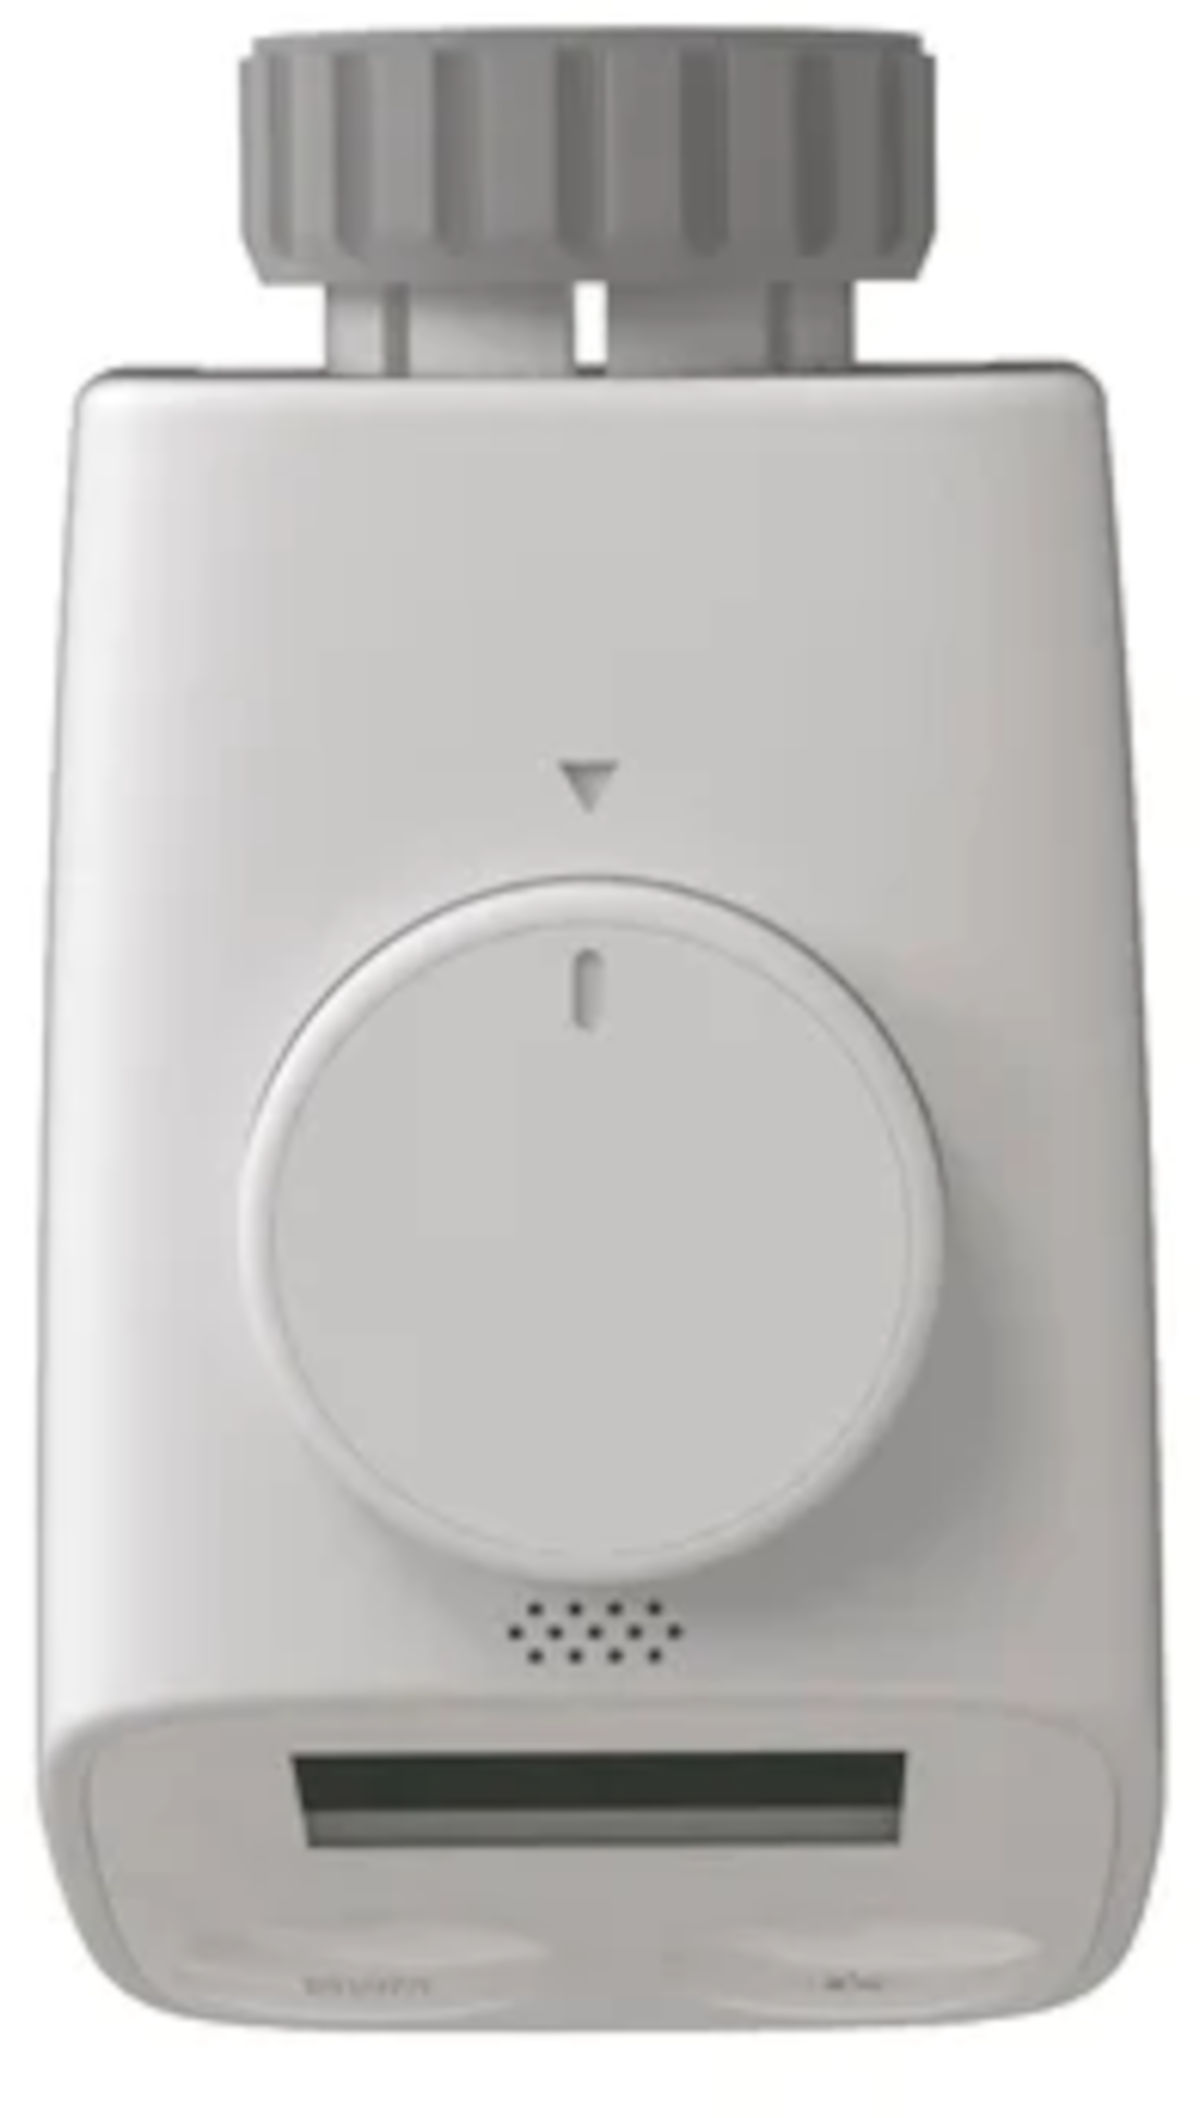 Wesmartify Smart Home Heizkörperthermostat, Draufsicht, vor weißem Hintergrund